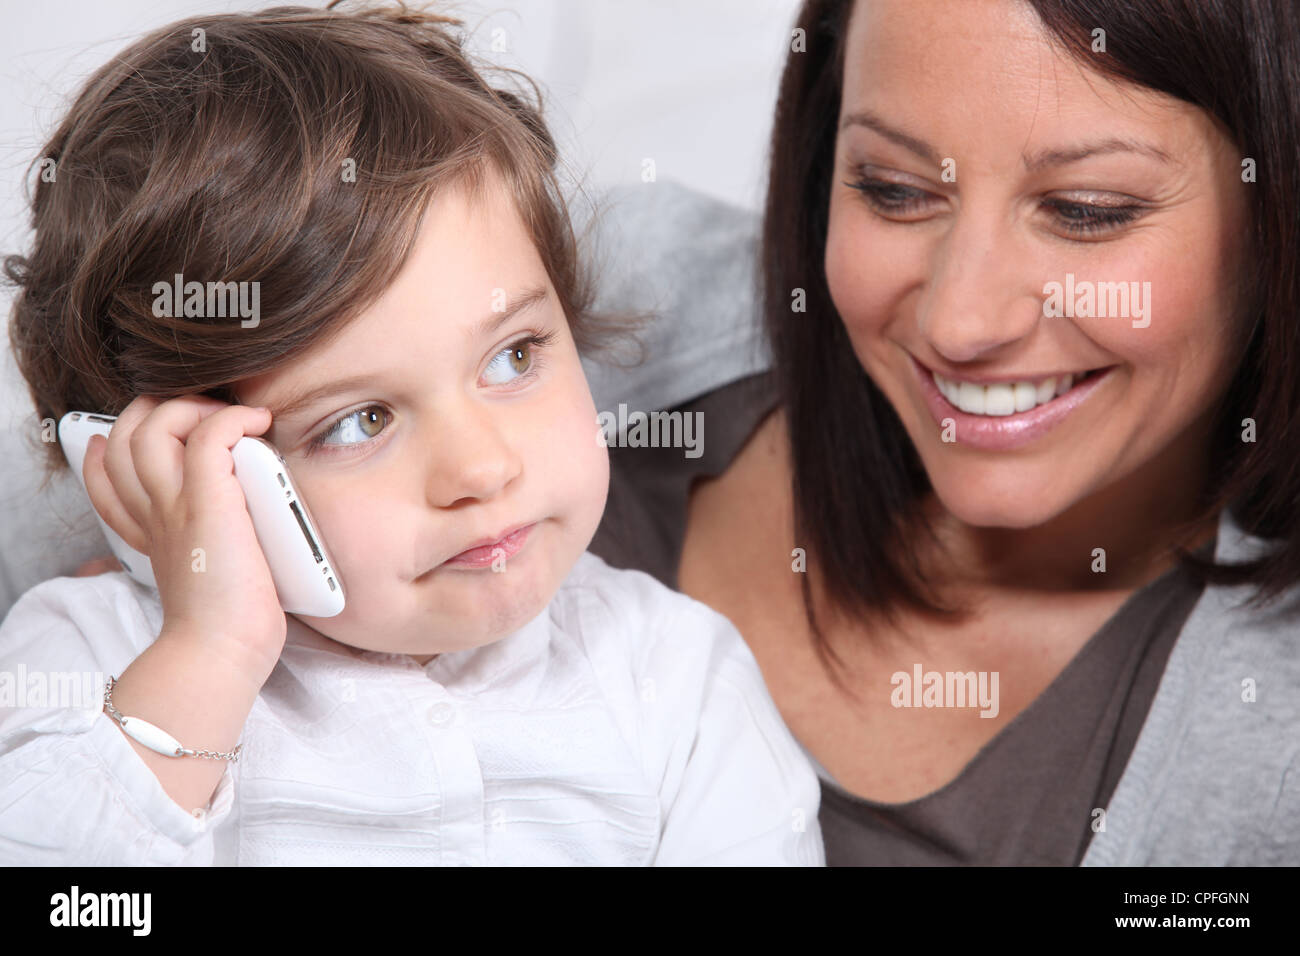 Пришли маме на телефон. Мама с телефоном. Фото с маминого телефона. Картинки на телефон мама с детьми. Ребенок играющий и мама с телефоном.